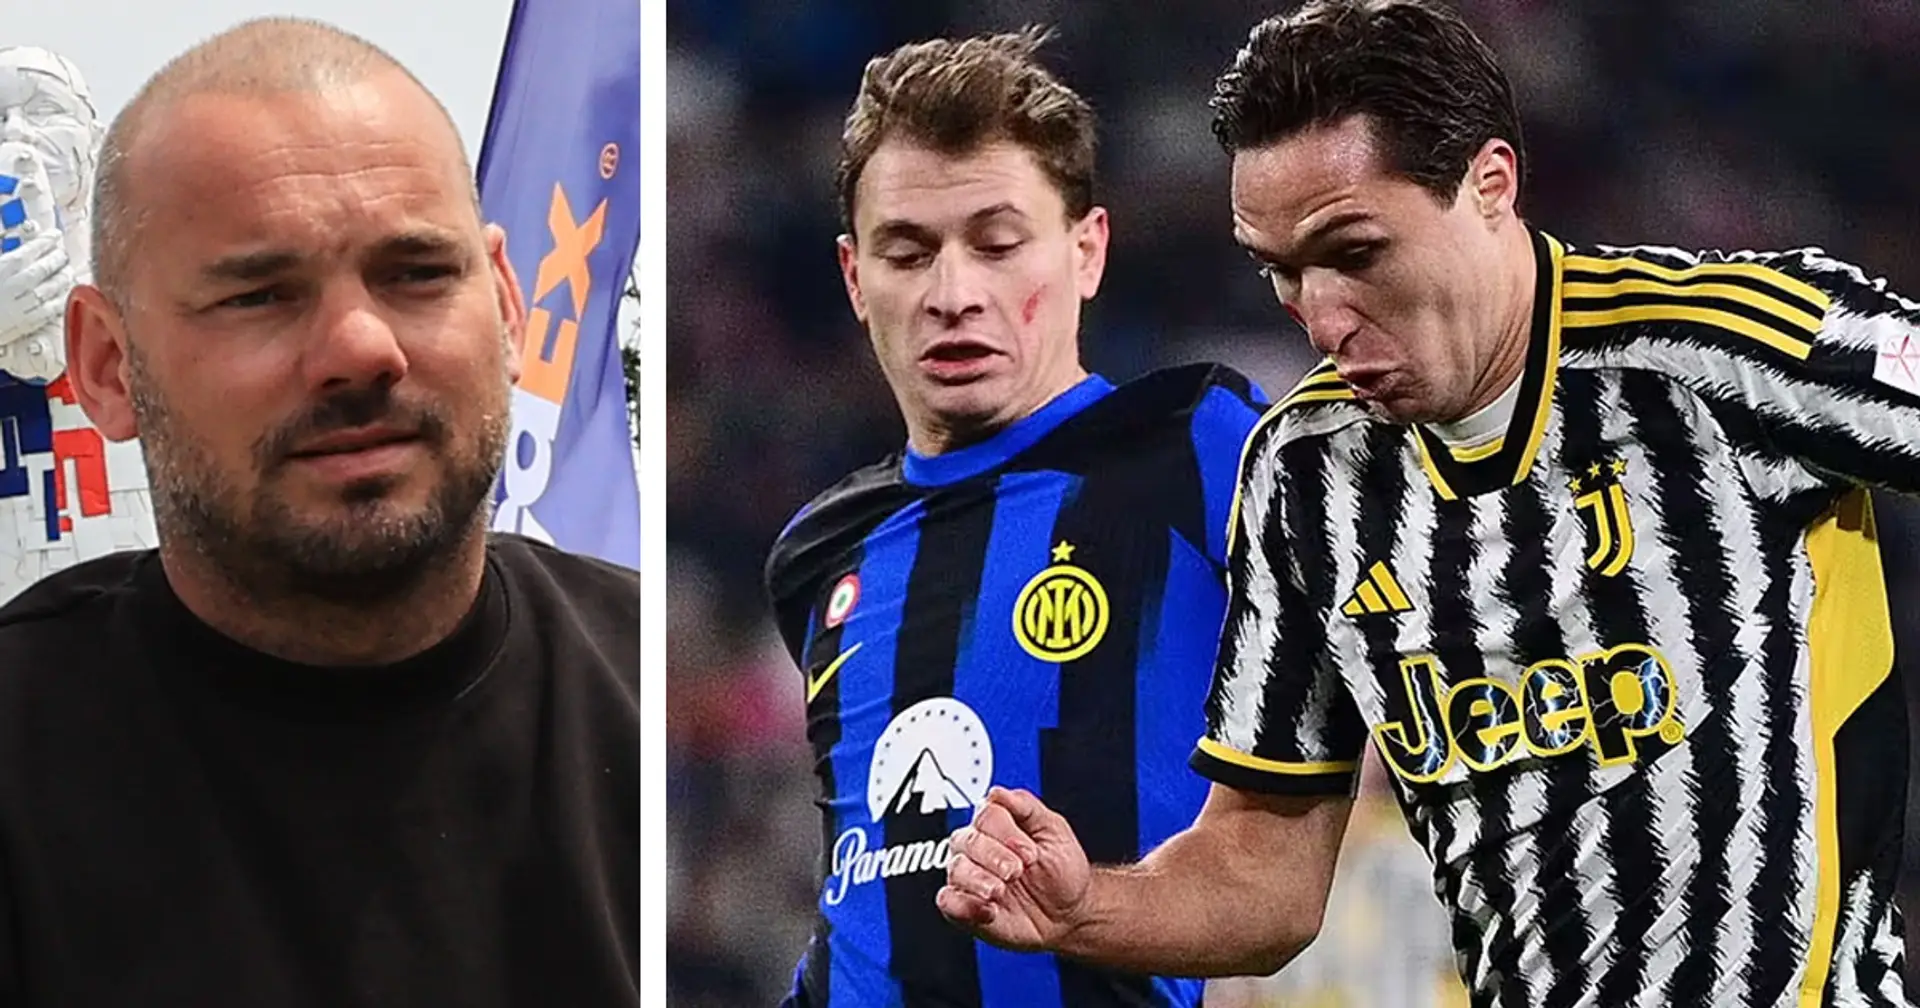 "Non vinci lo scudetto domani!": Sneijder carica l'Inter ma alza l'attenzione, umiltà contro la Juve